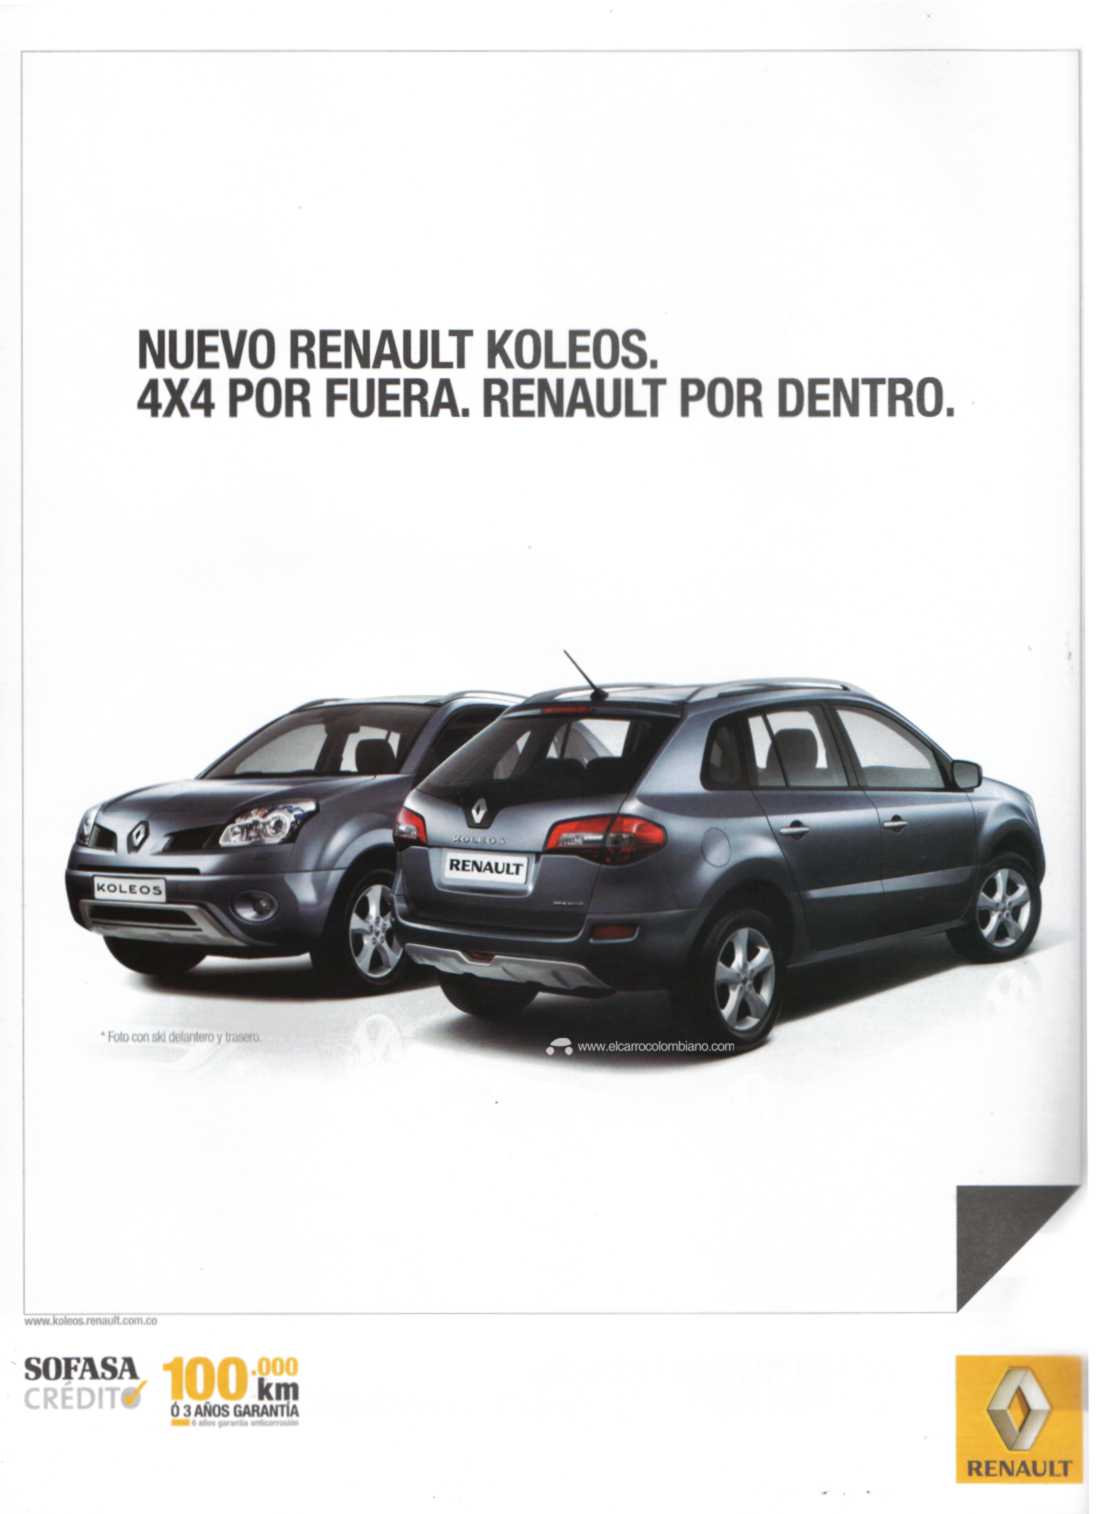 Renault Koleos 2009 Colombia